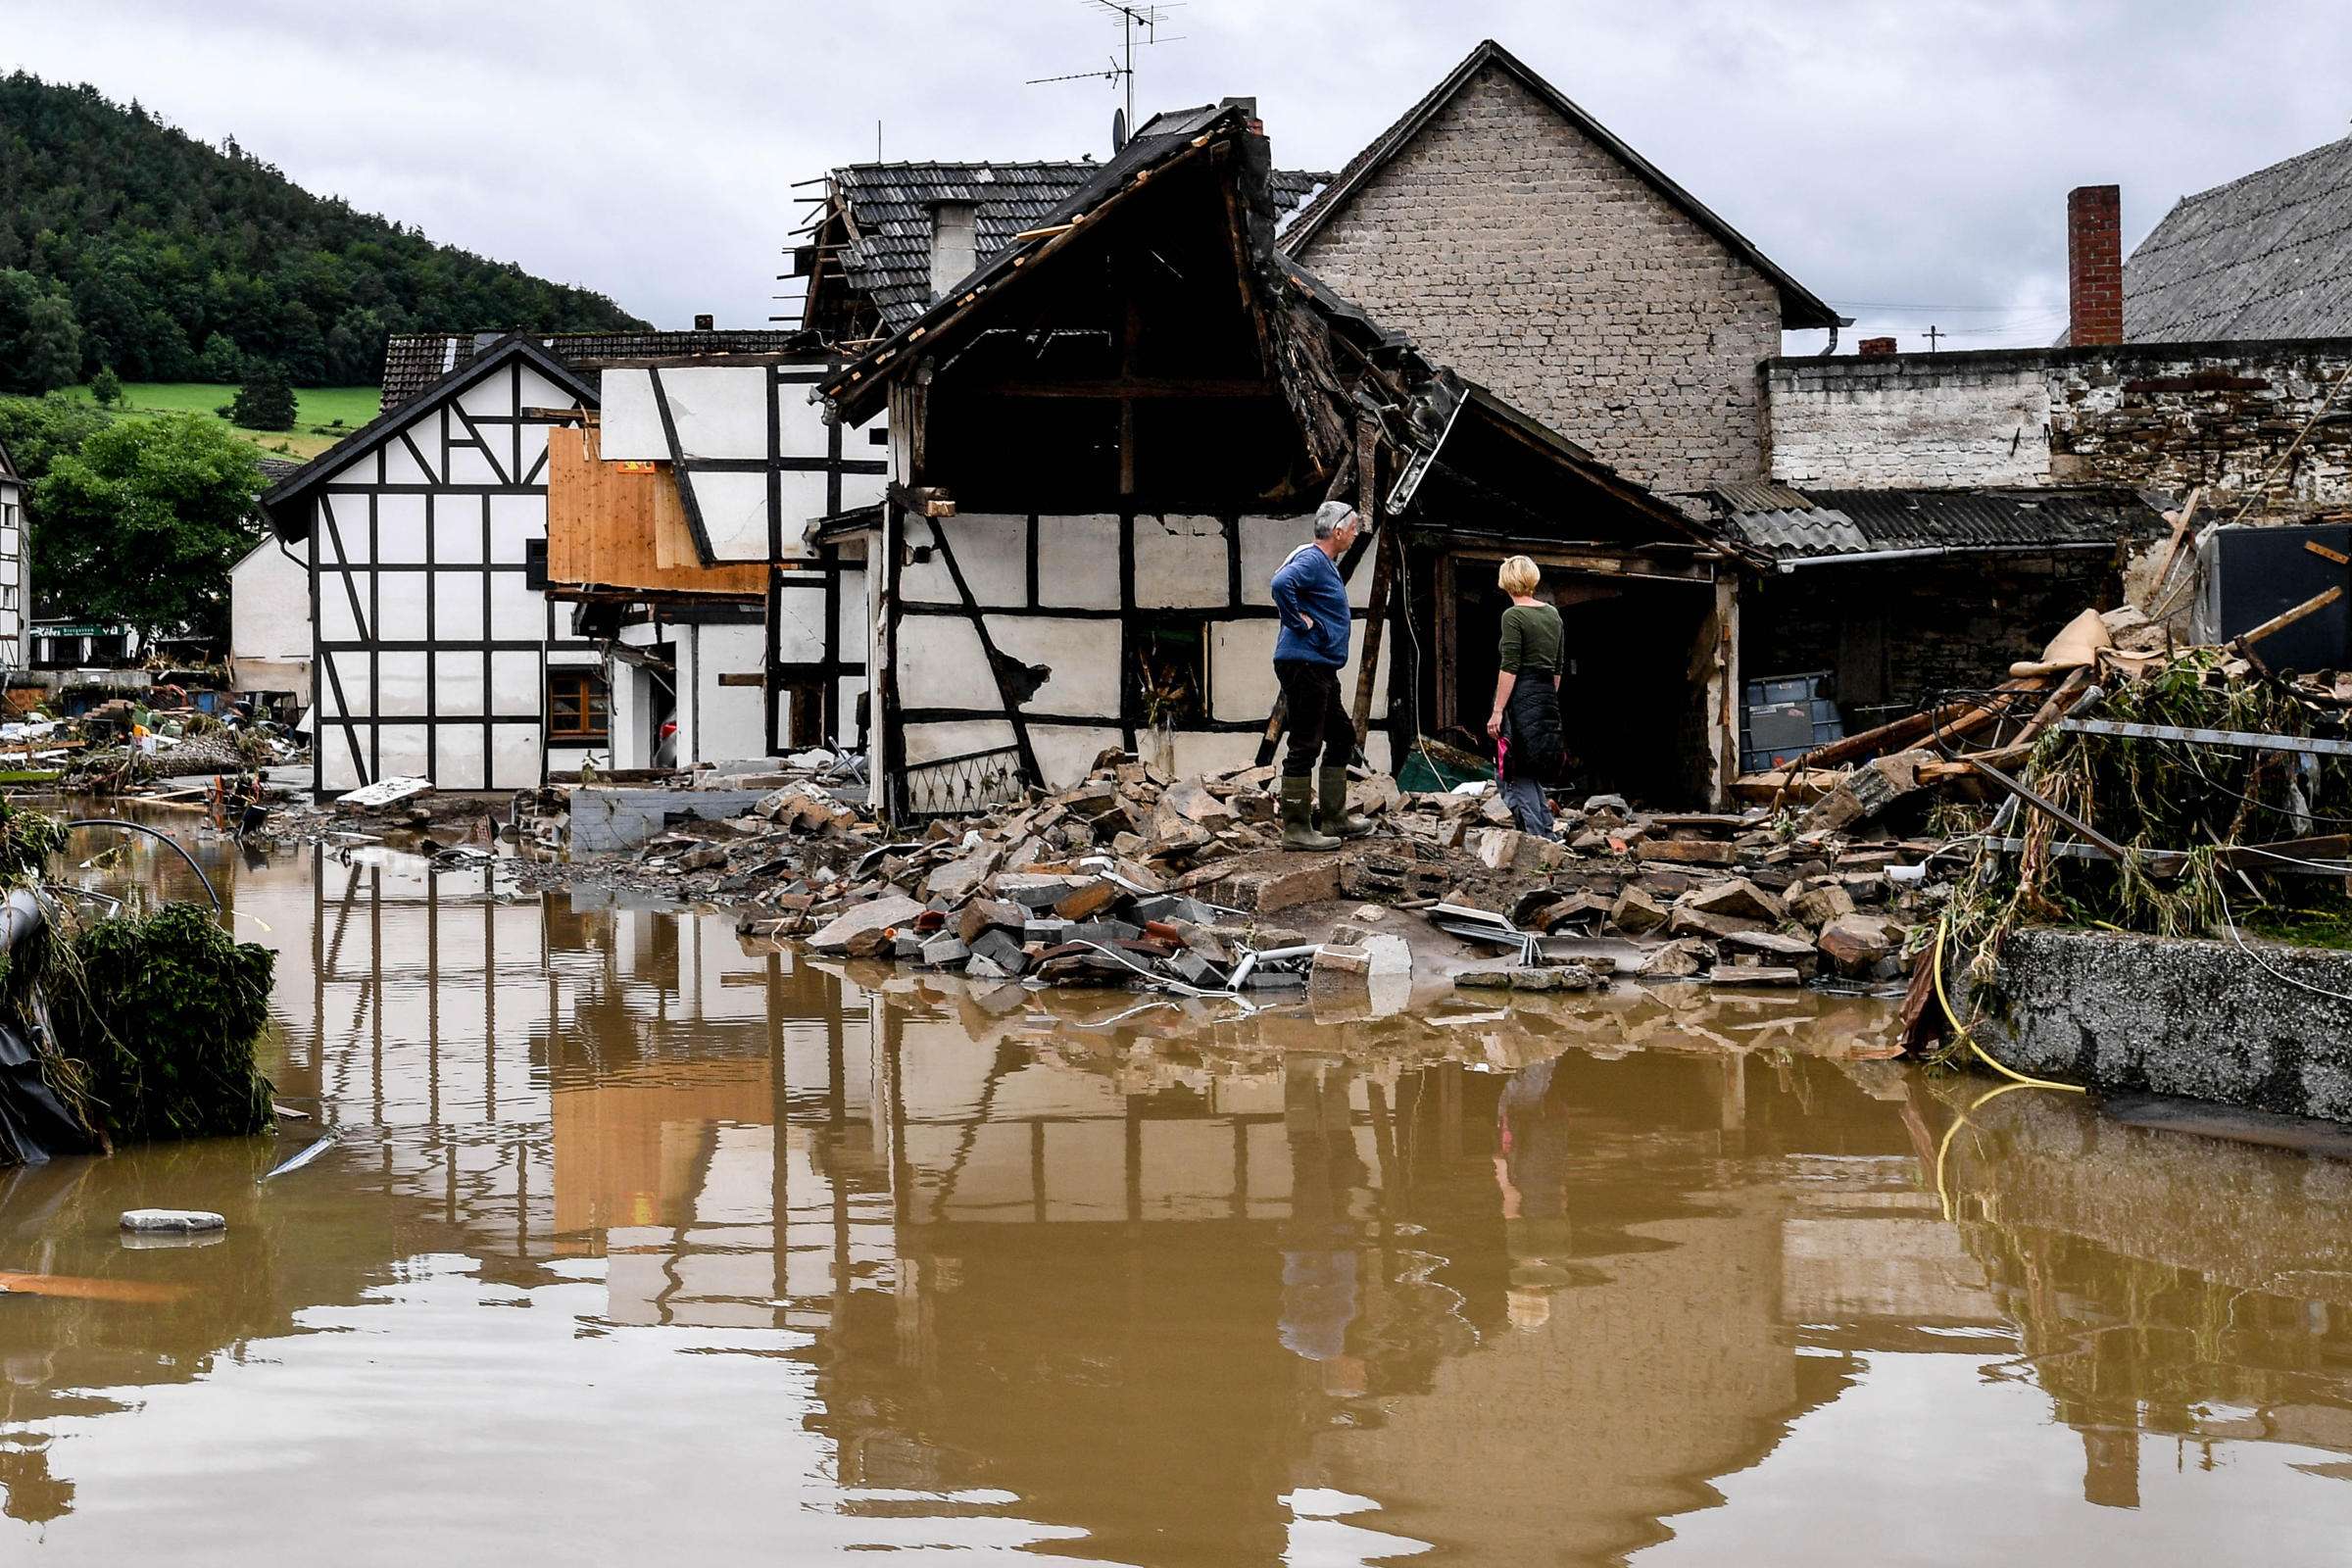 Hochwasserkatastrophe in Deutschland - Zwei Personen vor zerstörtem Haus